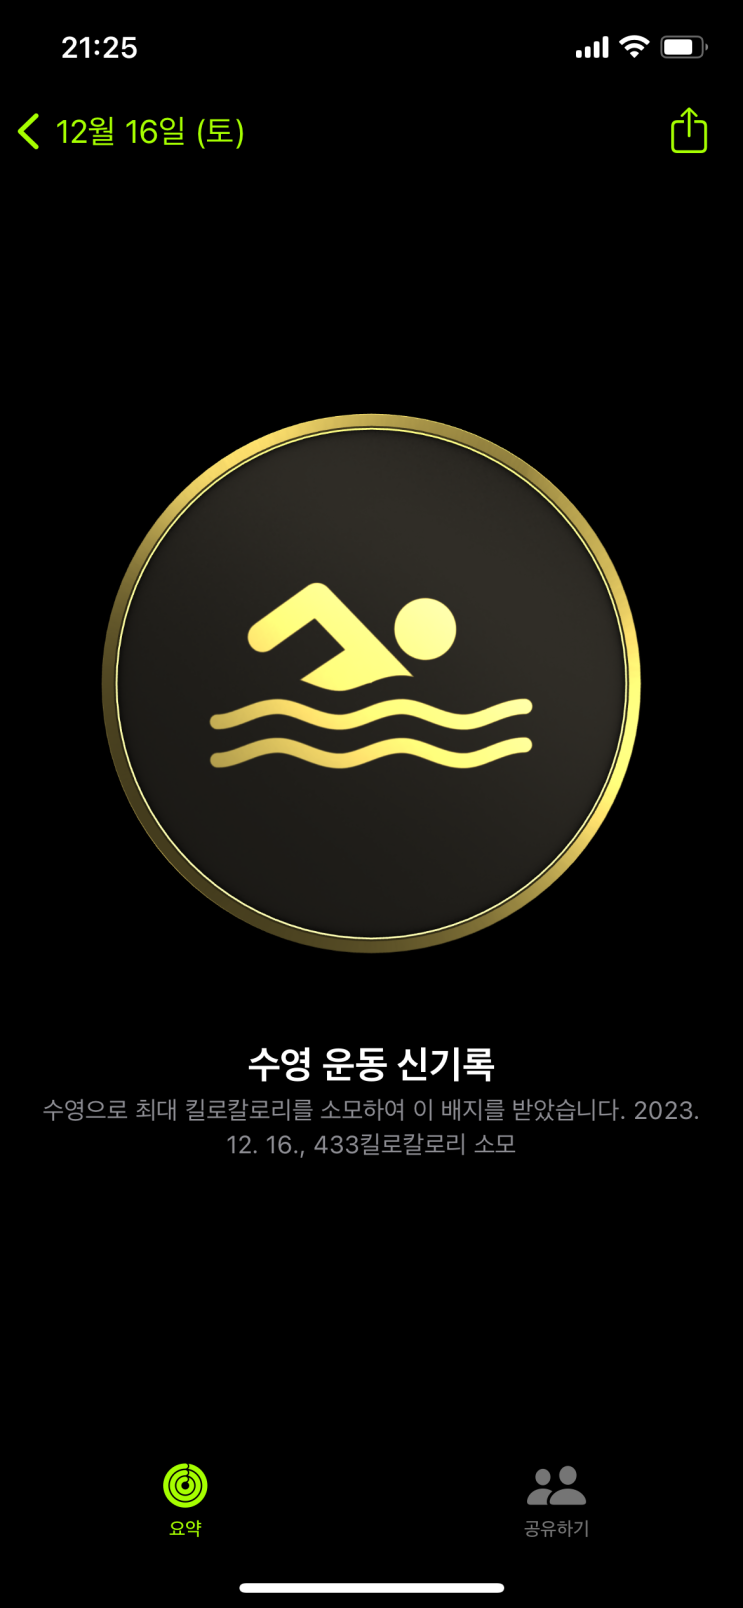 수영일기 89. 자유형 뺑뺑이, 6개월간 얼마나 발전했을까? (feat. 기록 비교)